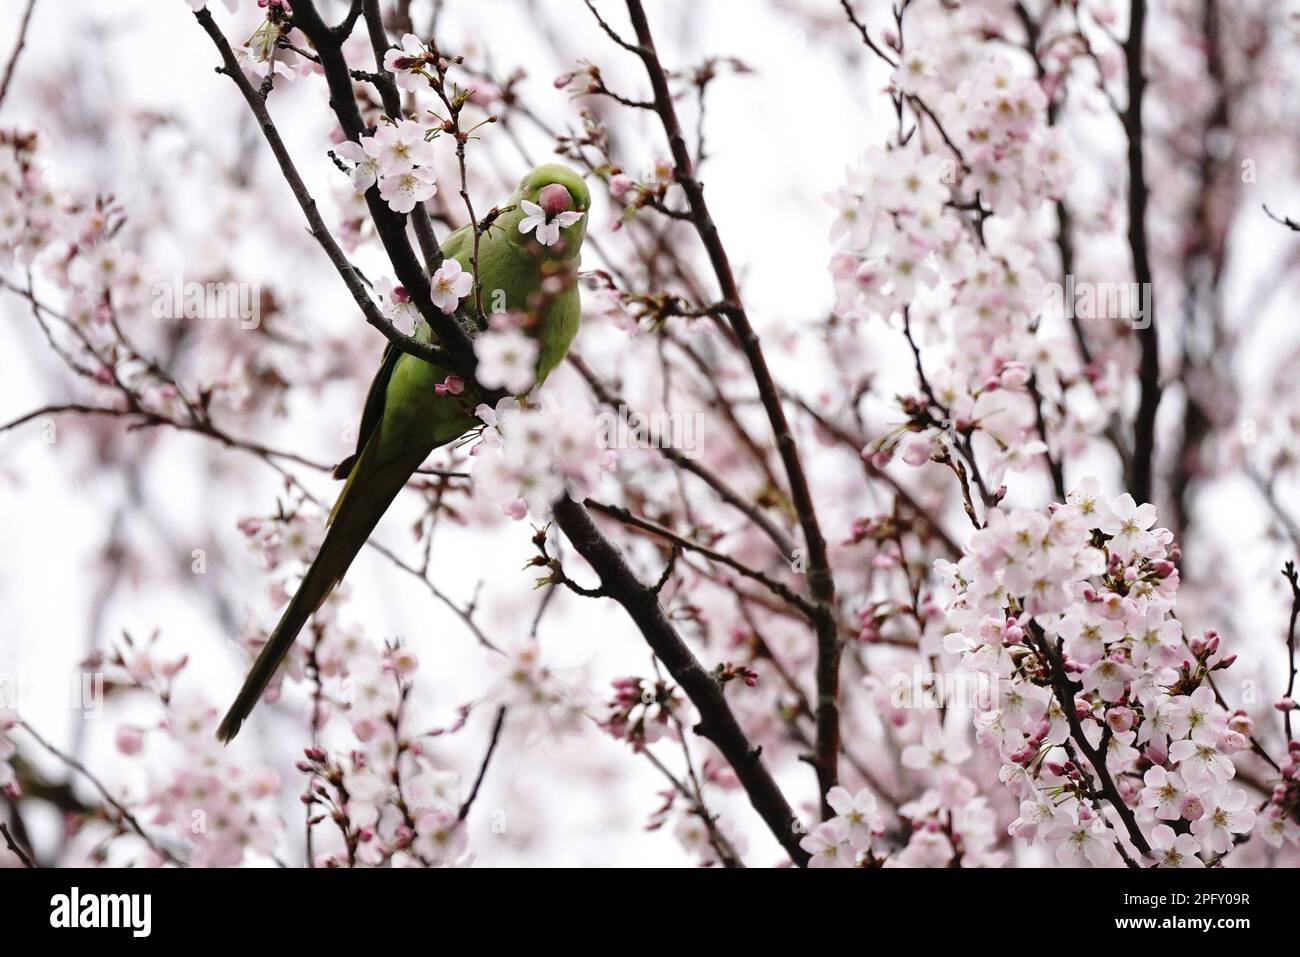 Un oiseau se trouve dans un arbre de fleurs à Battersea Park, Londres. Date de la photo: Dimanche 19 mars 2023. Banque D'Images